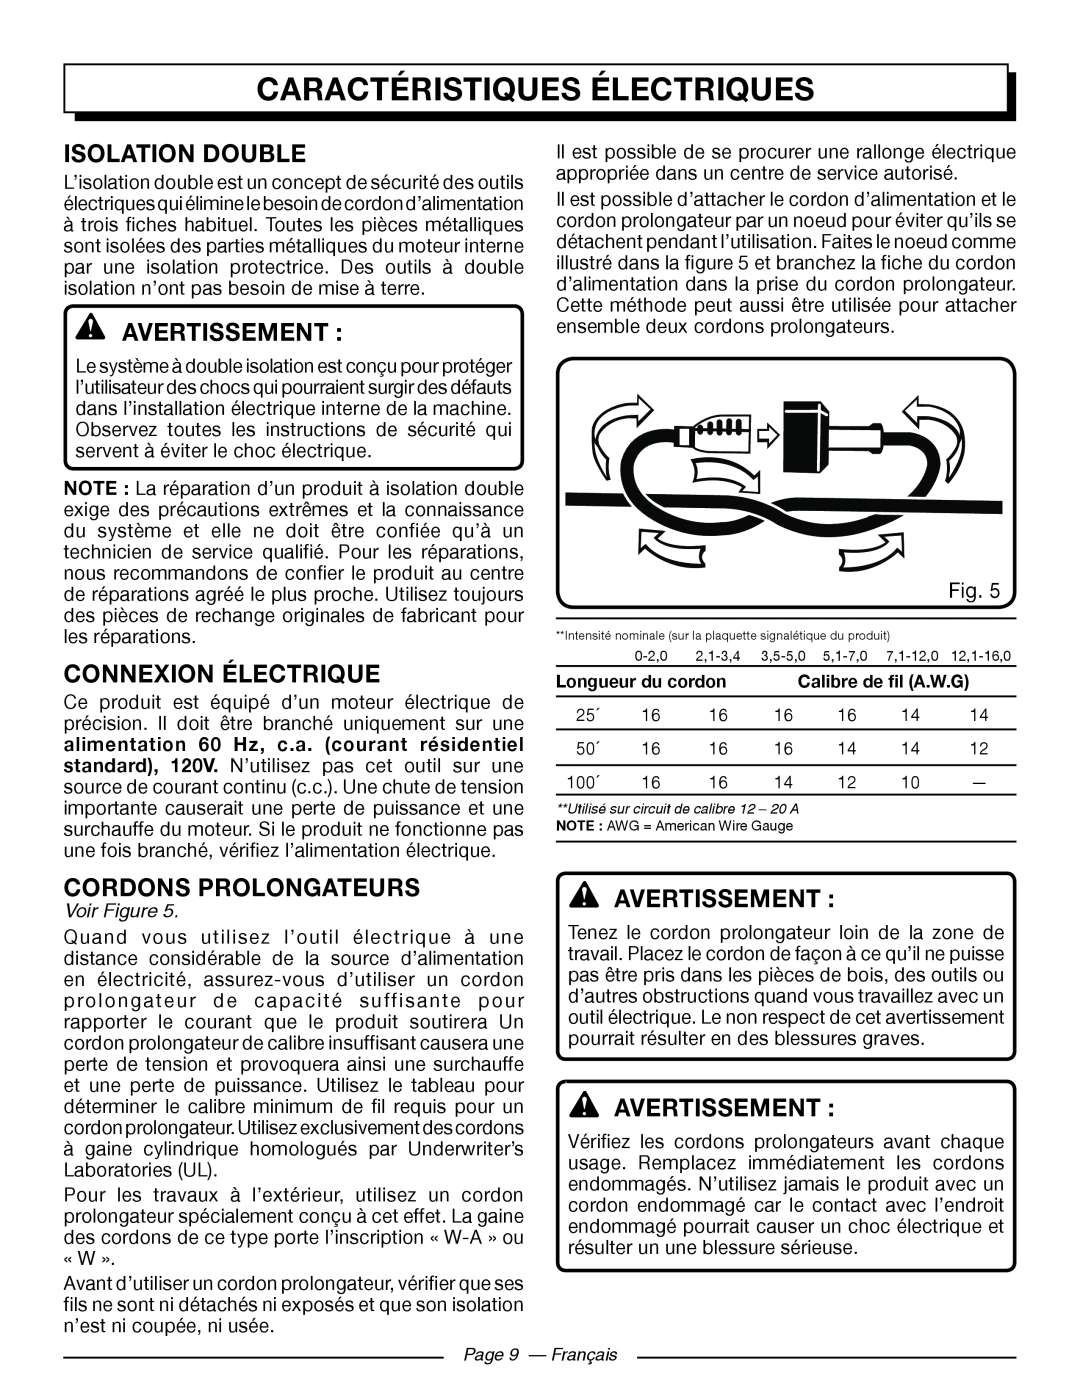 Homelite UT43102 Caractéristiquesfonctionsélectriques, Isolation Double, Connexion Électrique, Cordons Prolongateurs 